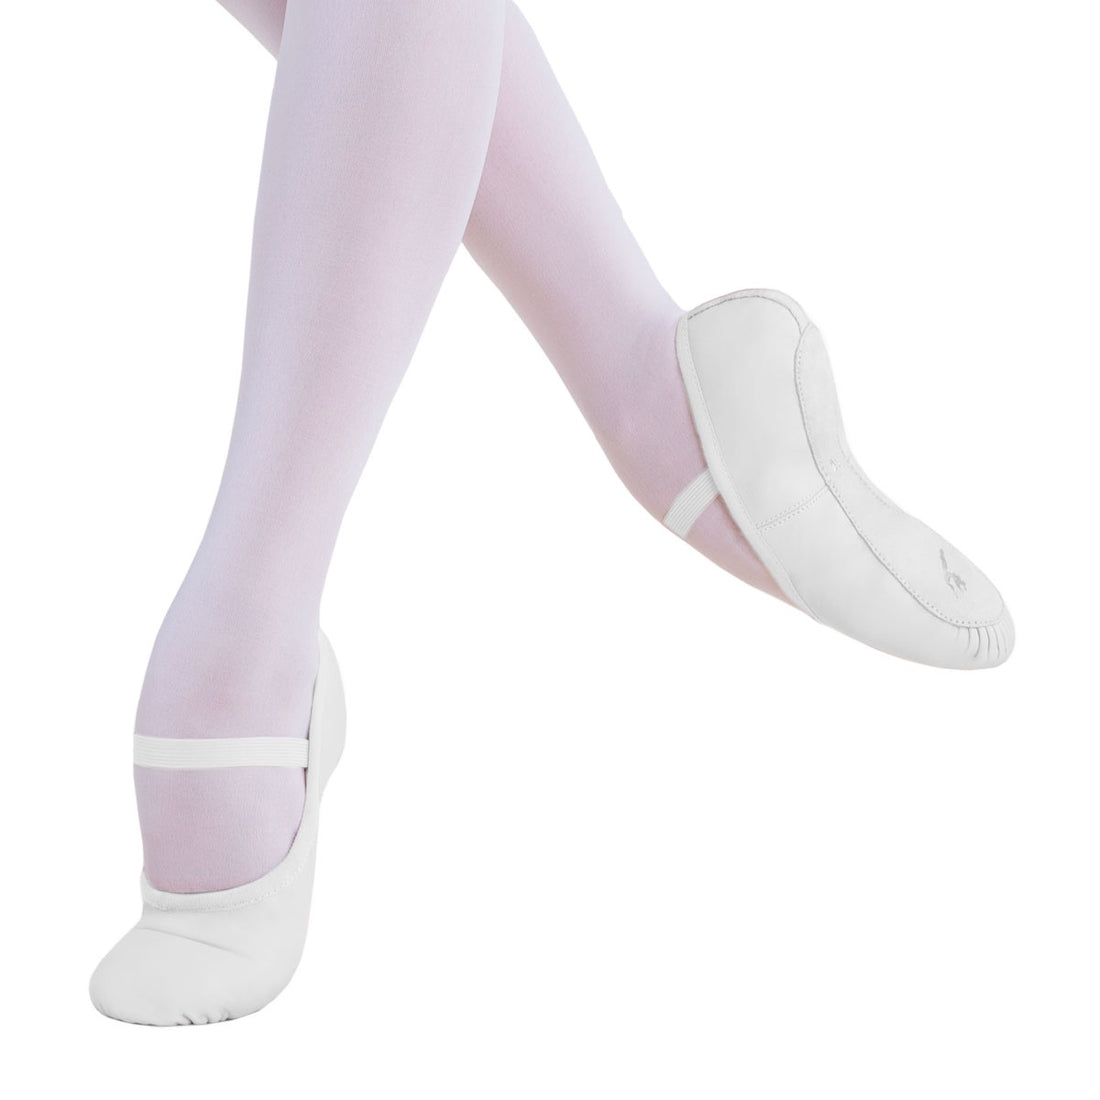 Energetiks Adults Ballet Shoe - Full Sole White